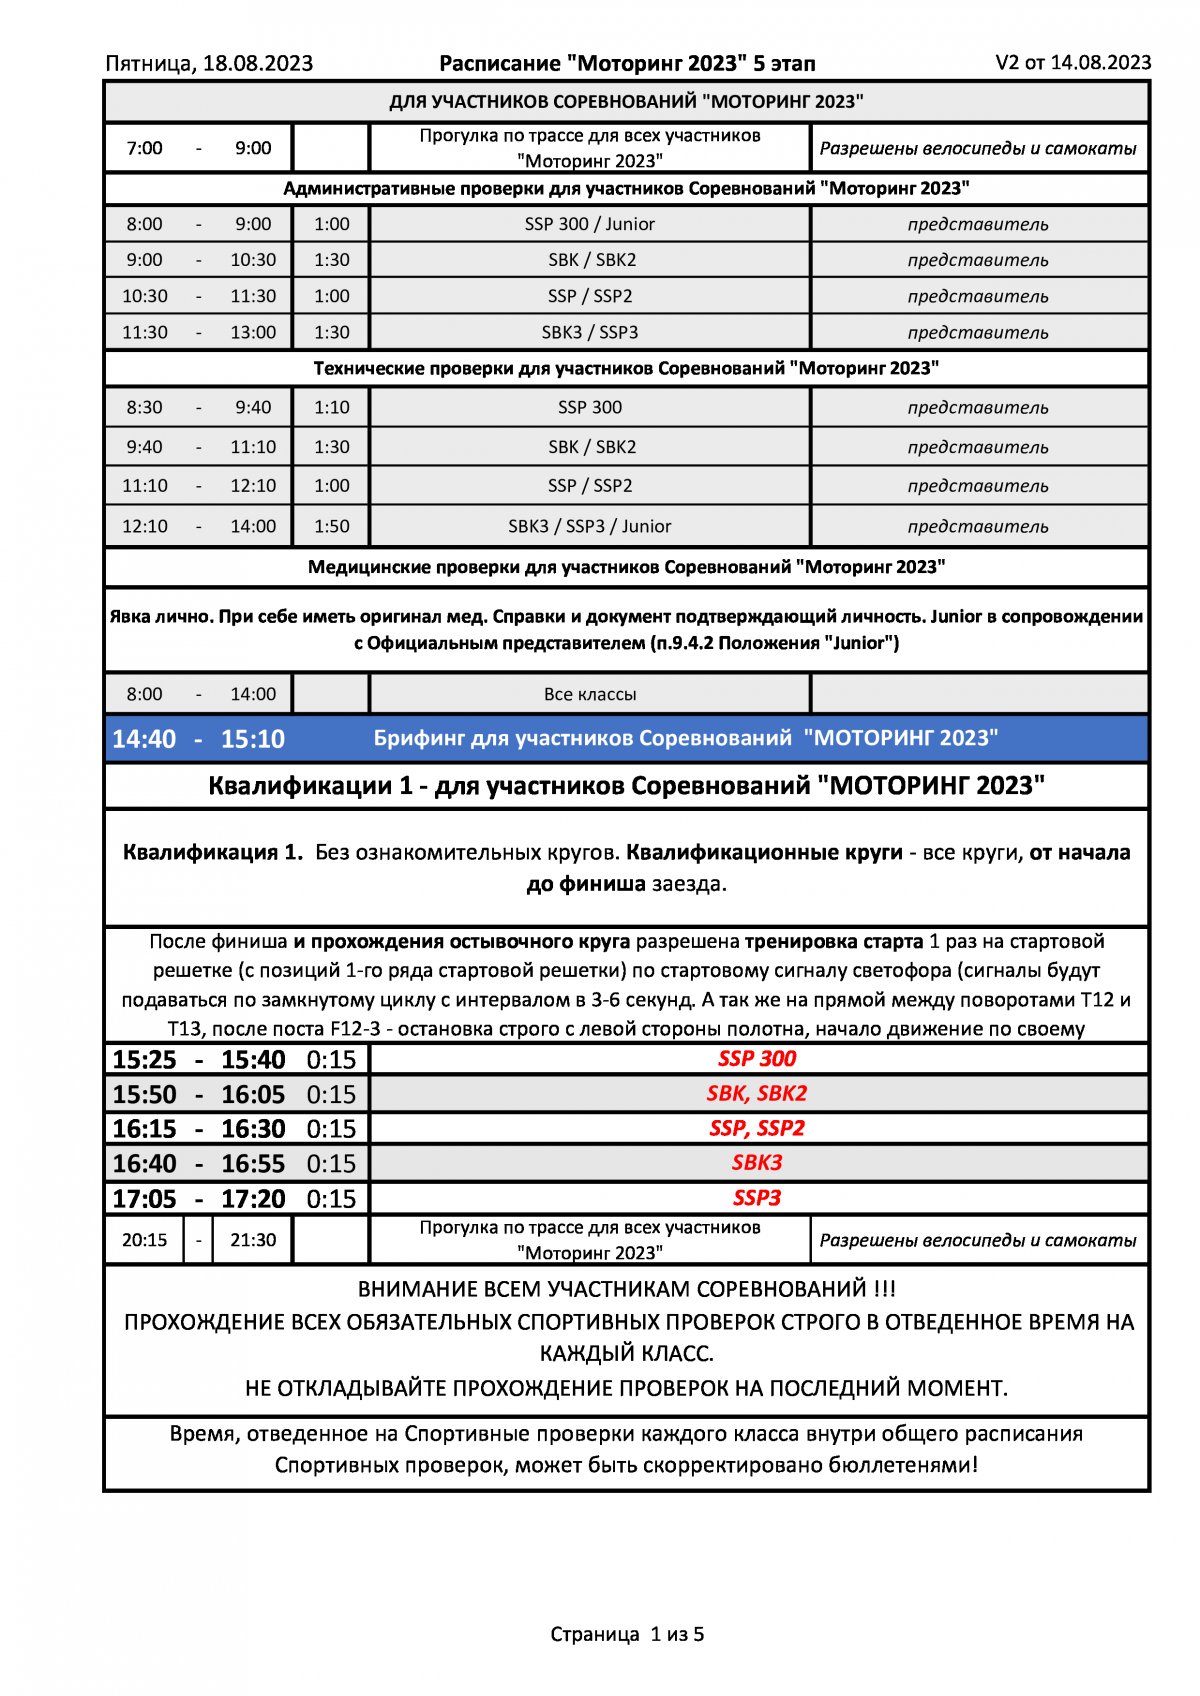 Расписание 5 этапа чемпионата России по ШКМГ, Игора Драйв